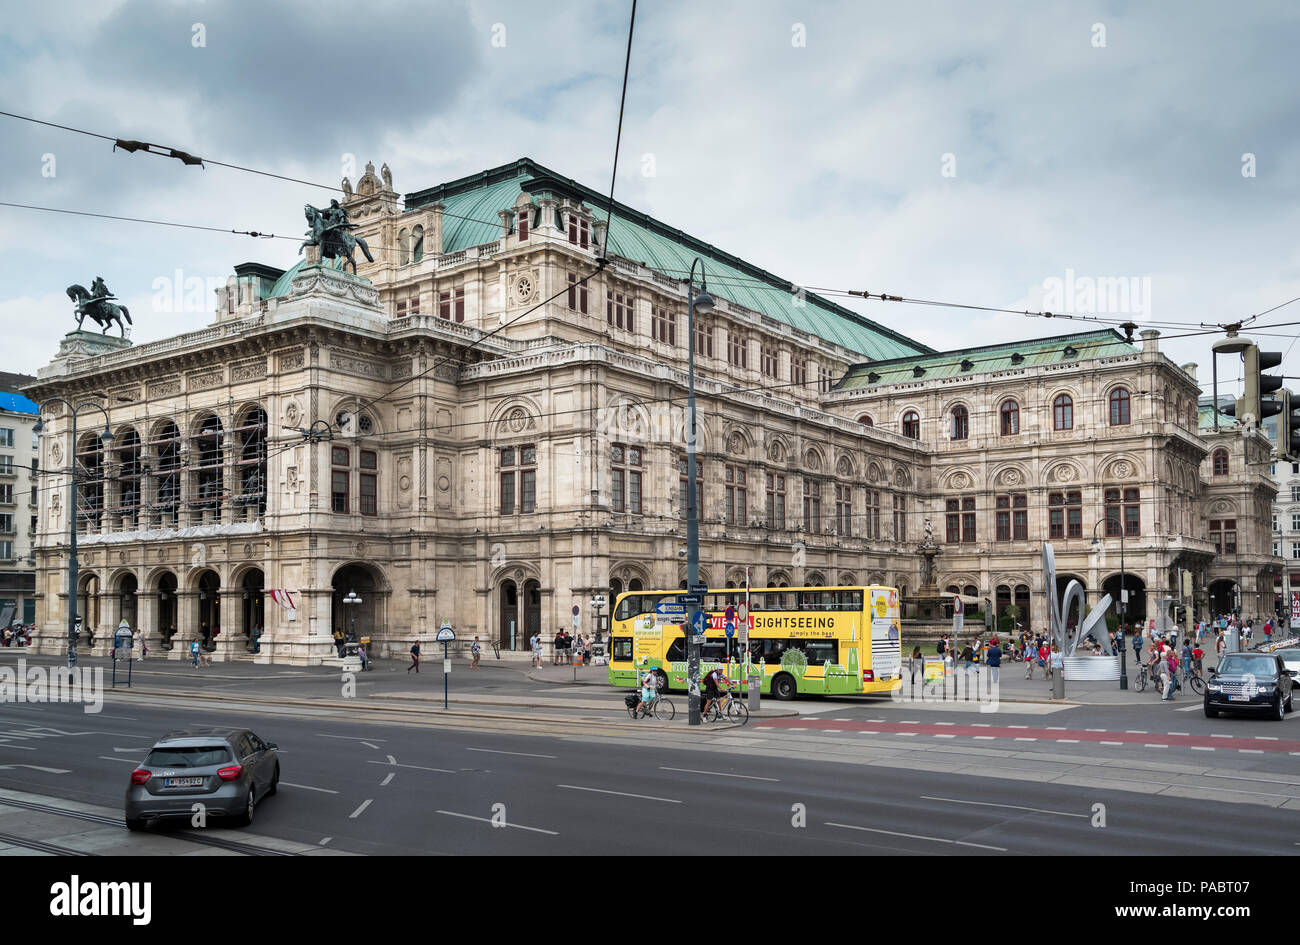 Maison de l'Opéra de Vienne (1869) Vienne Autriche Banque D'Images